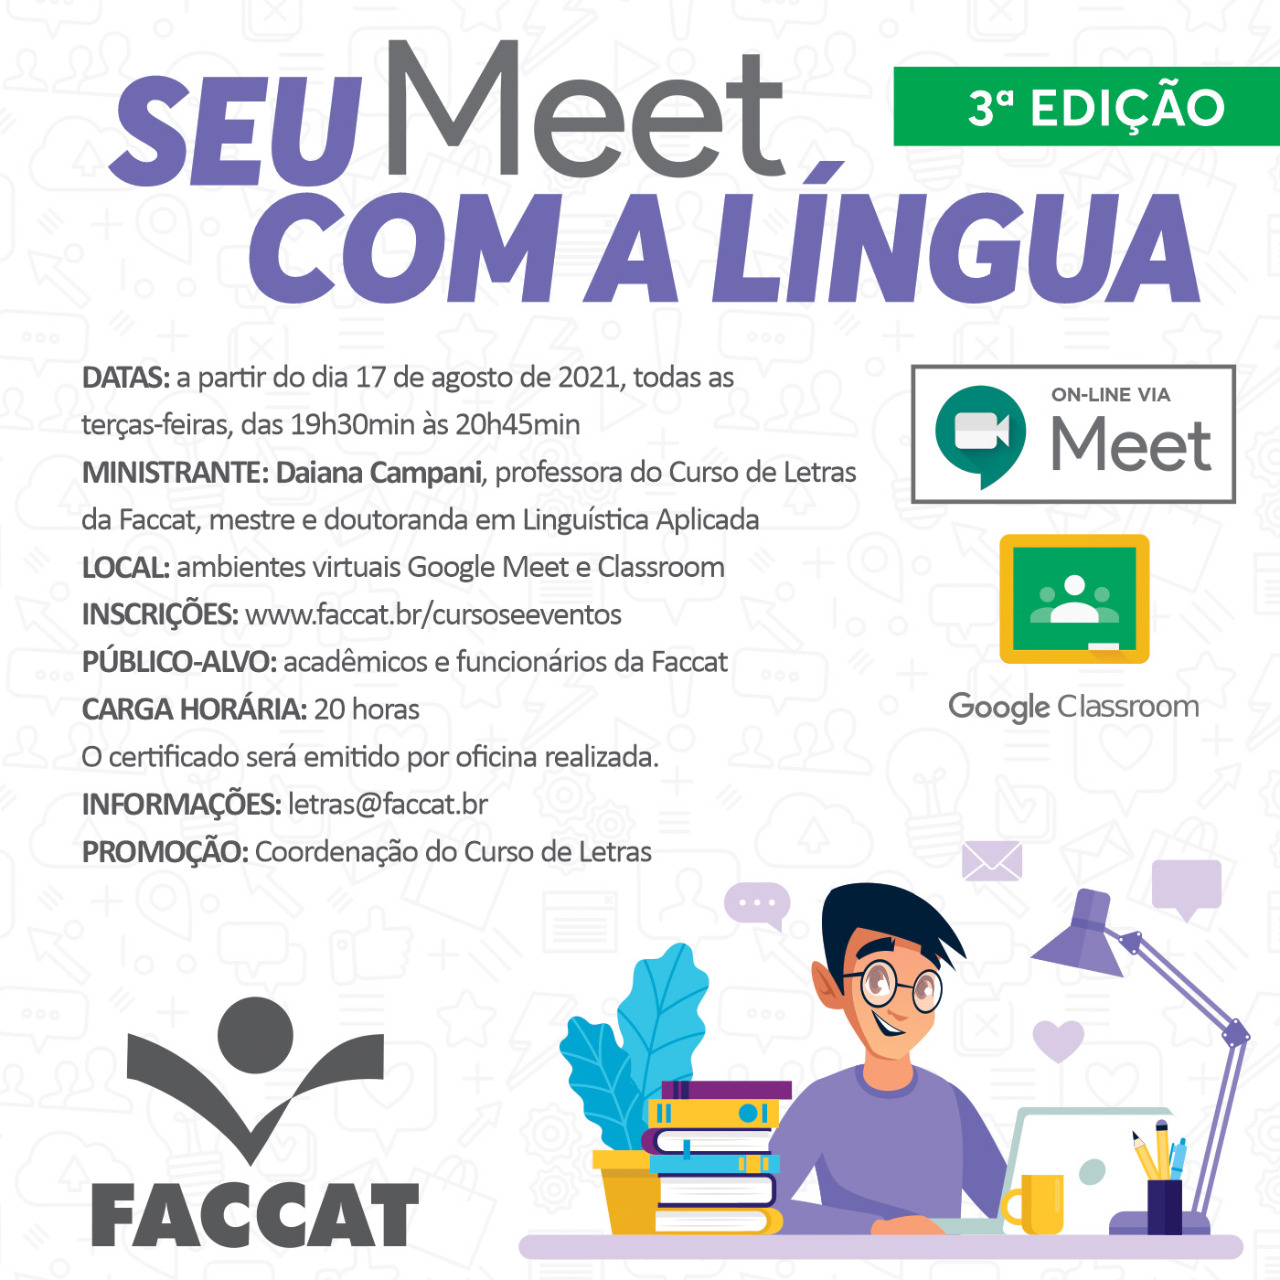 Inscrições: www.faccat.br/cursoseeventos